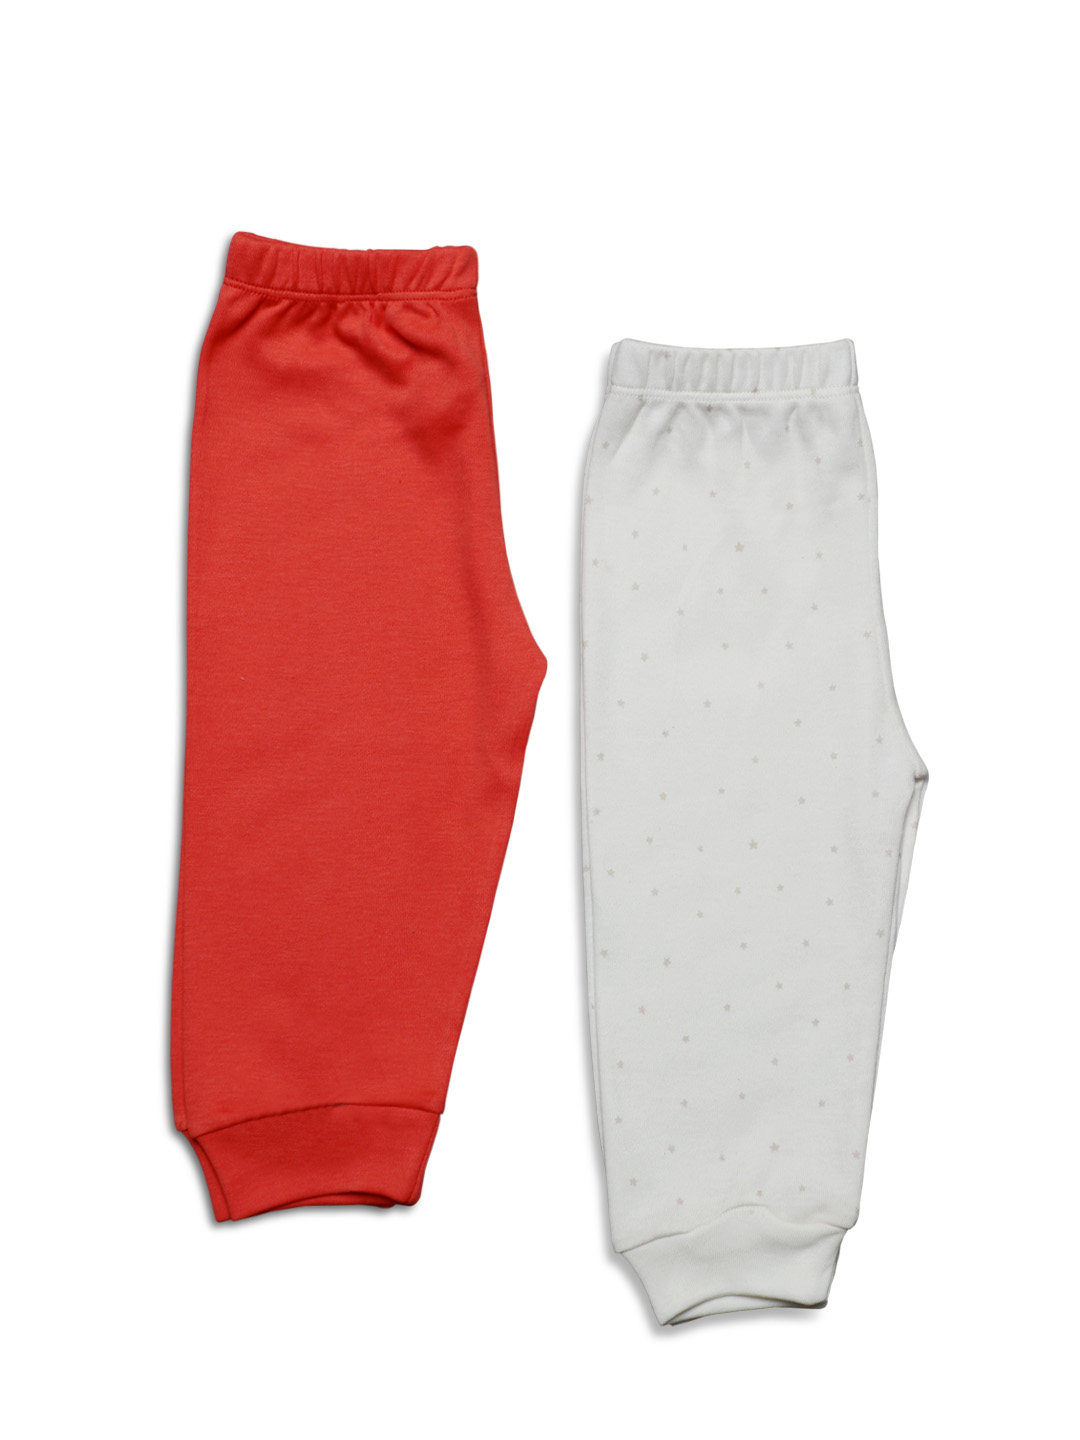 Unisex Leggings (Pack of 2)- White & Red